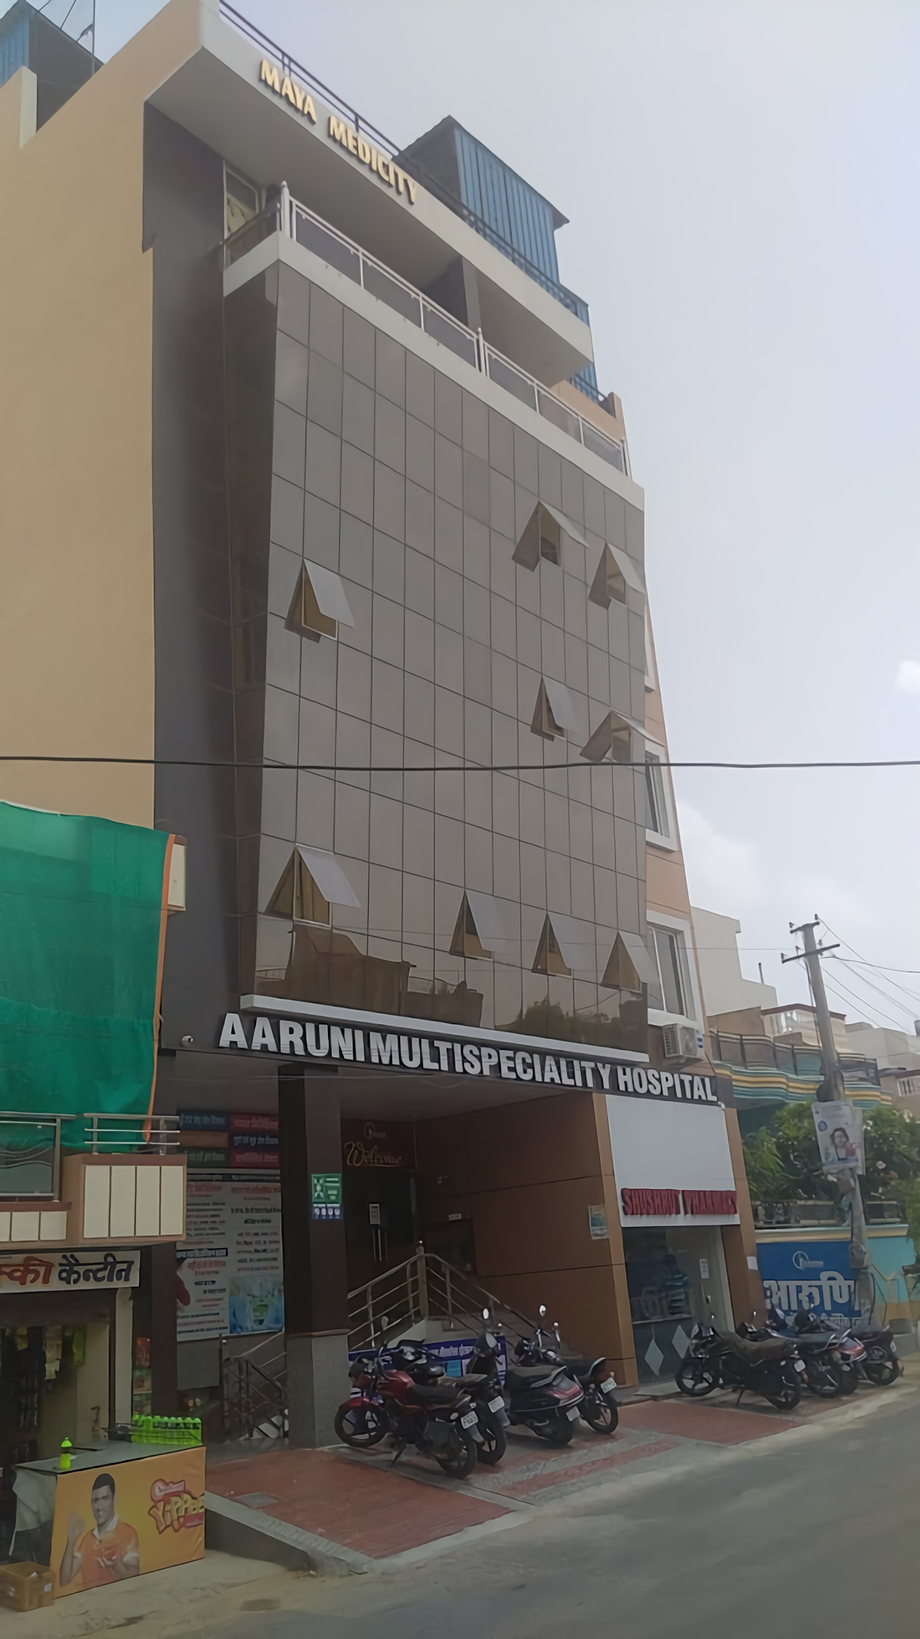 Aaruni Multispeciality Hospital